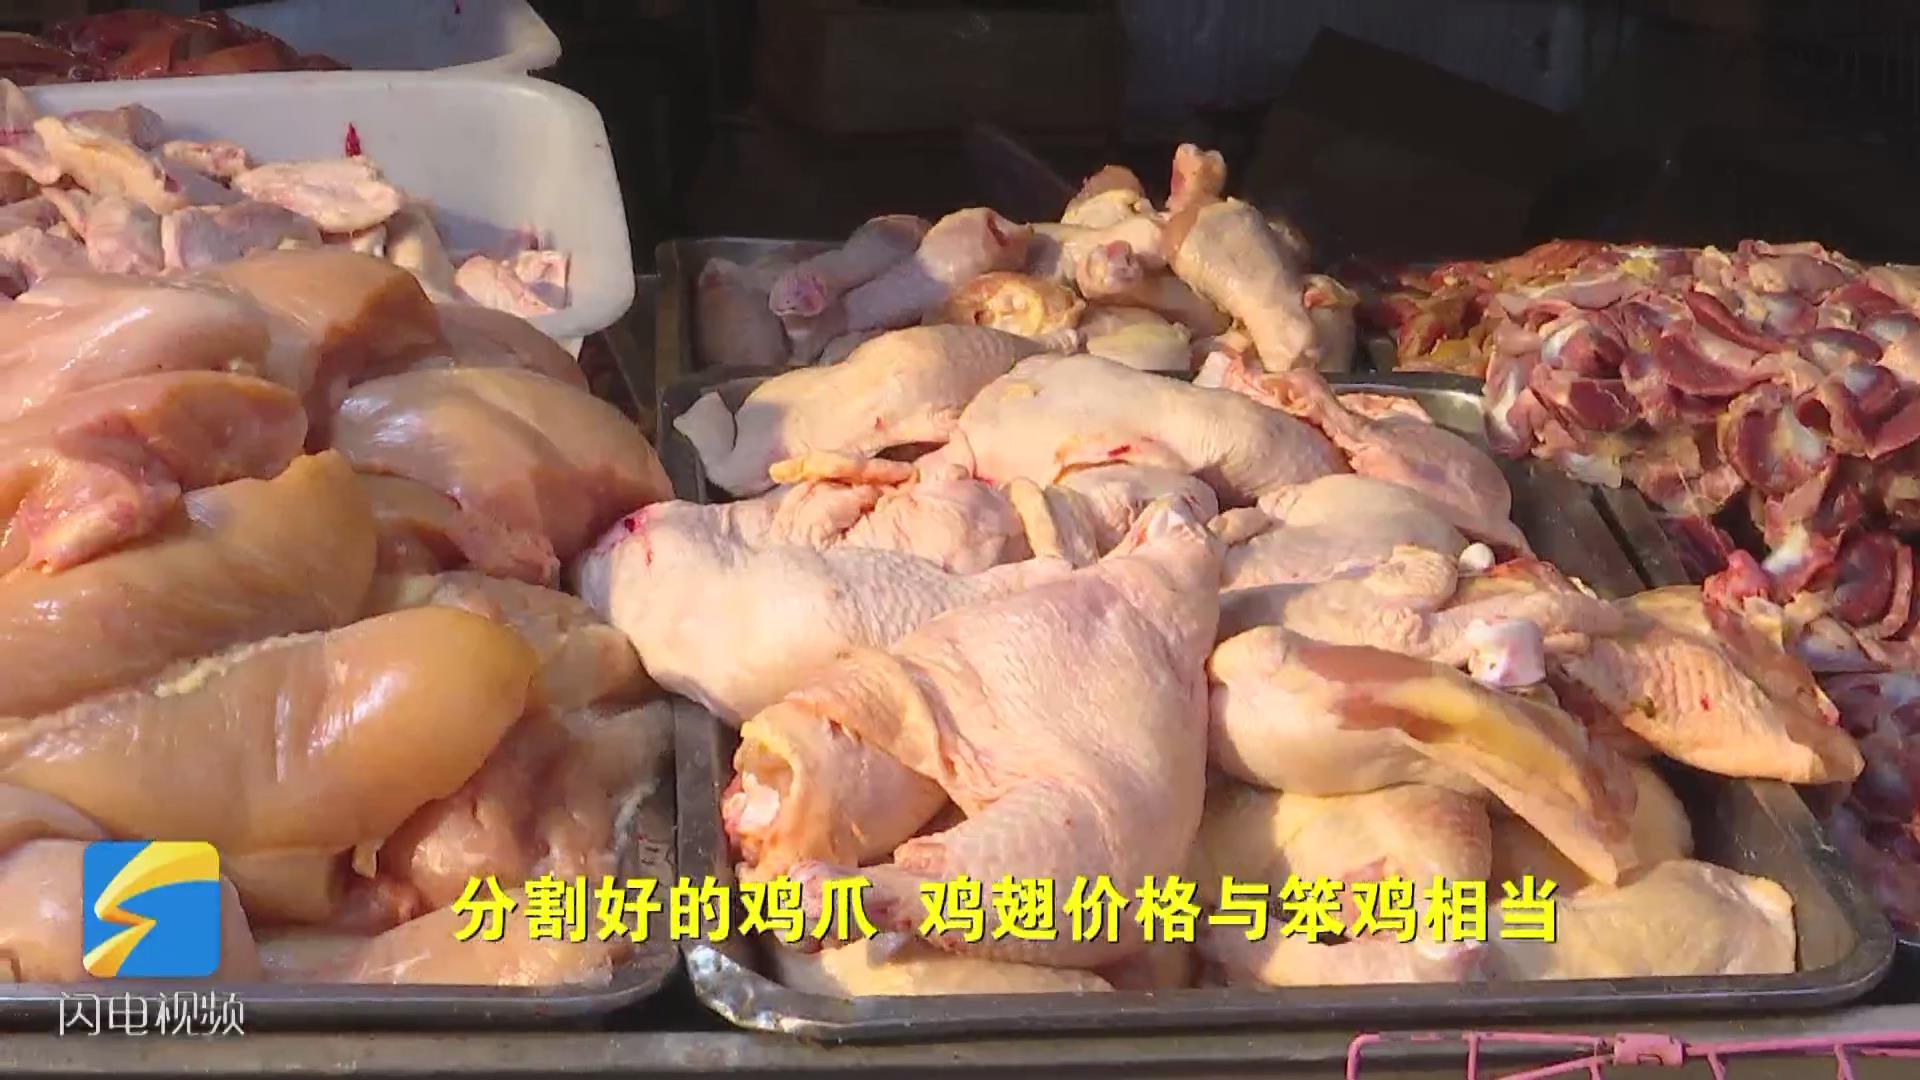 鸡肉价格为何"一飞冲天"记者探访济南农贸市场查找原因